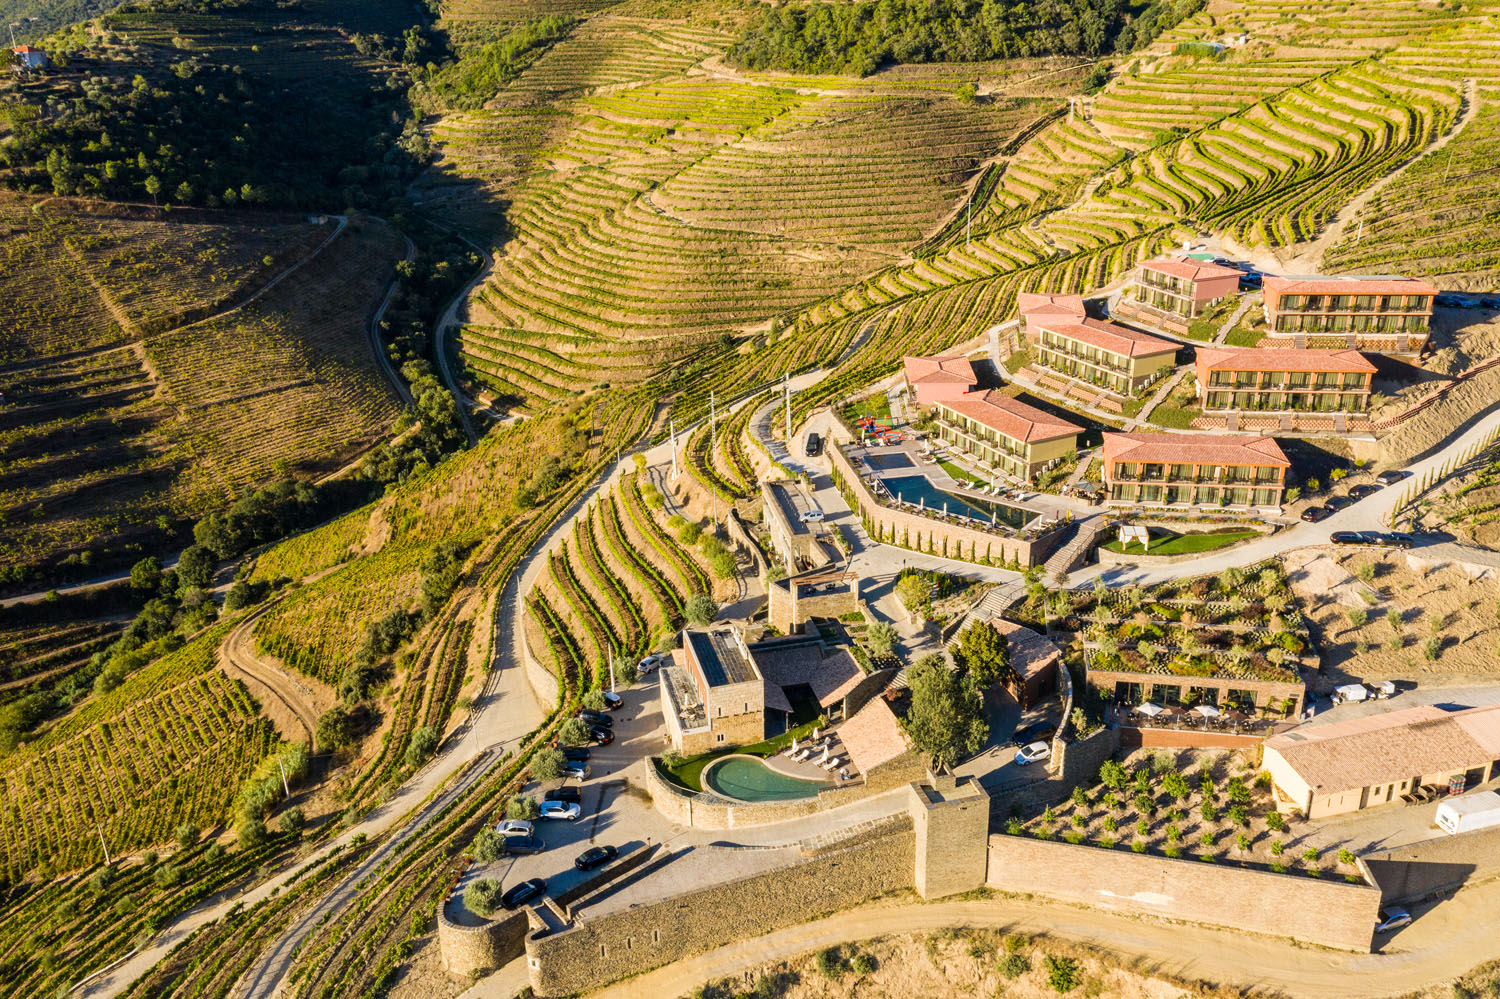 Vila Galé Peso da Régua: Descubra o Melhor Hotel no Douro